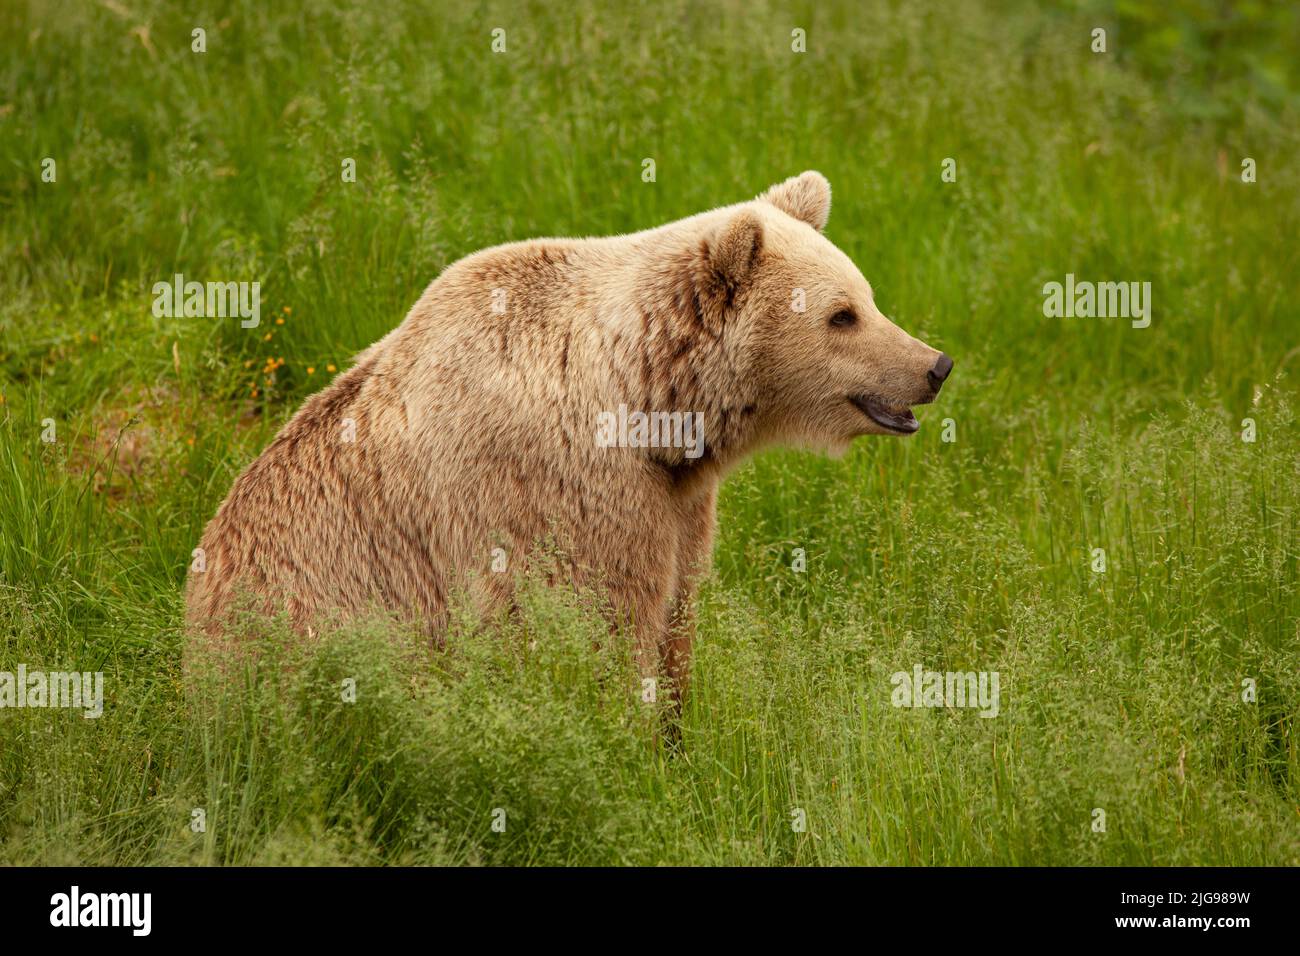 Großer junger Braunbär, der im Gras sitzt. Großes und gefährliches Tier in freier Wildbahn. Bär schaut geradeaus, Wiese, Ohren und Schnauze aus der Nähe. Stockfoto